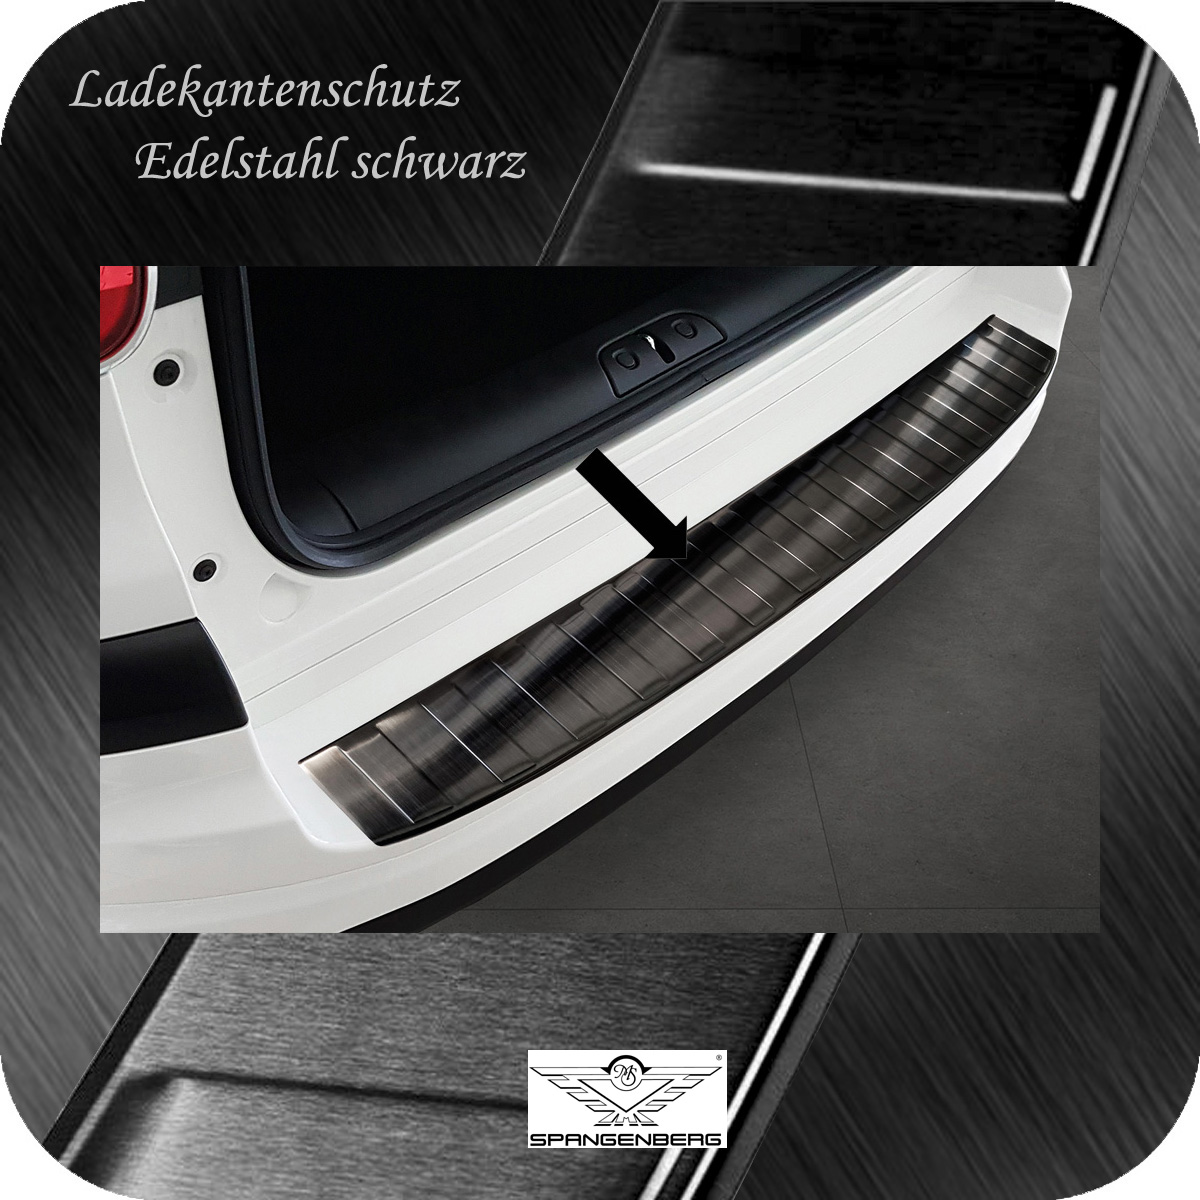 Ladekantenschutz Edelstahl schwarz für Fiat 500 L Facelift ab 06.2017- 3245315